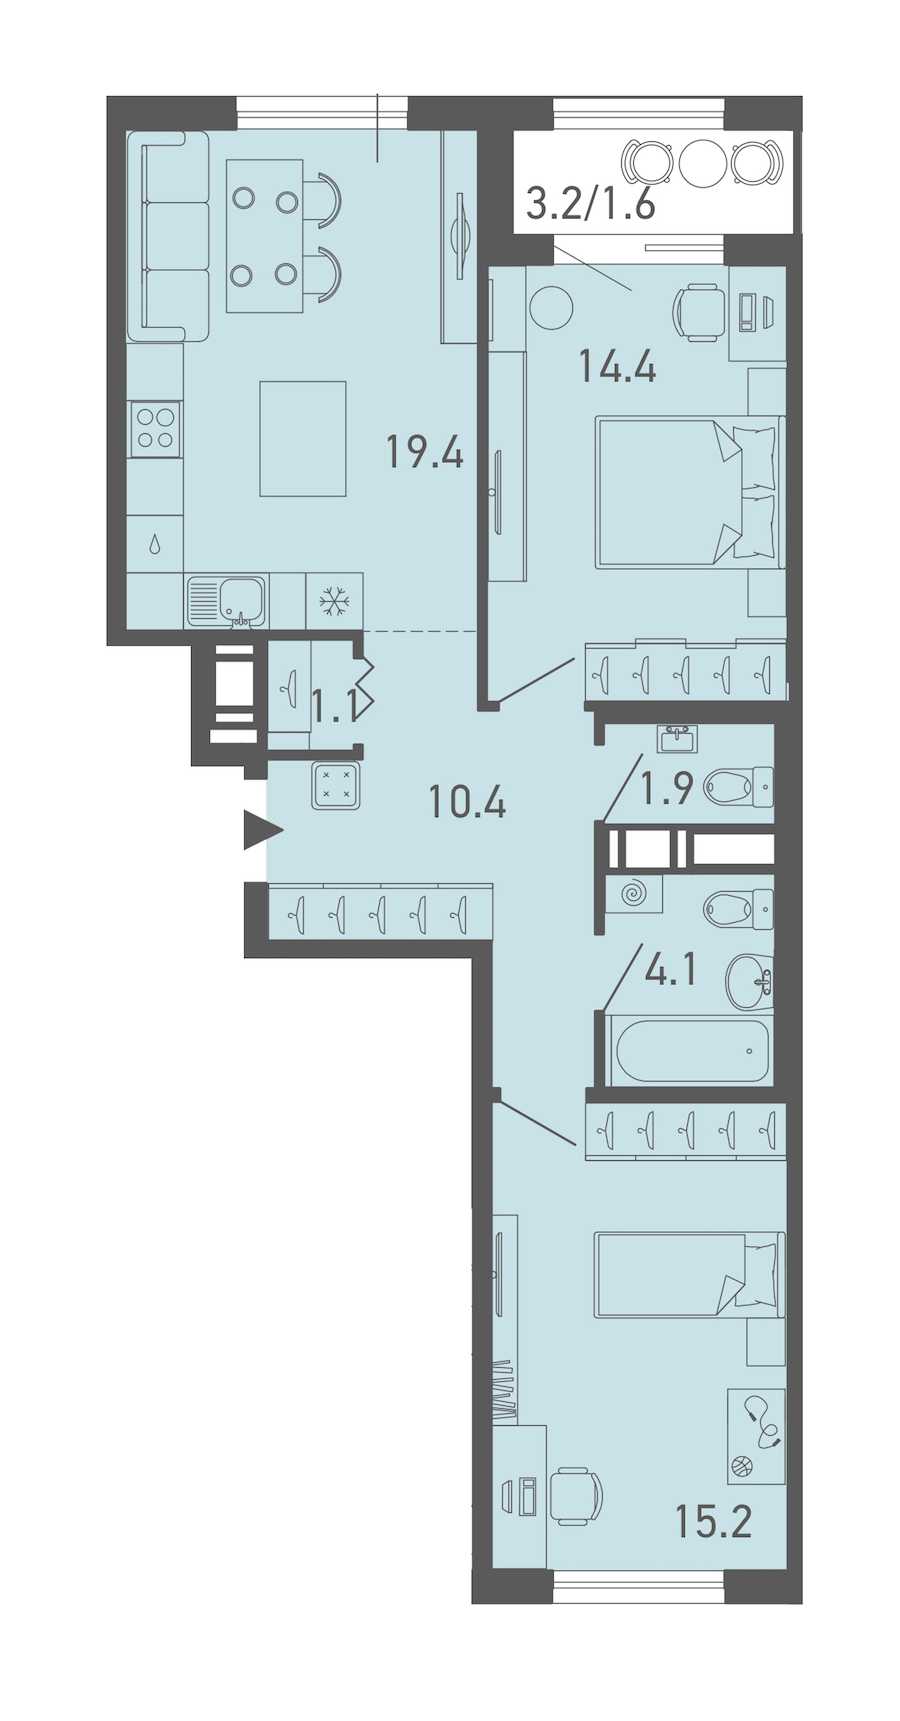 Двухкомнатная квартира в Эталон ЛенСпецСМУ: площадь 68.1 м2 , этаж: 9 – купить в Санкт-Петербурге